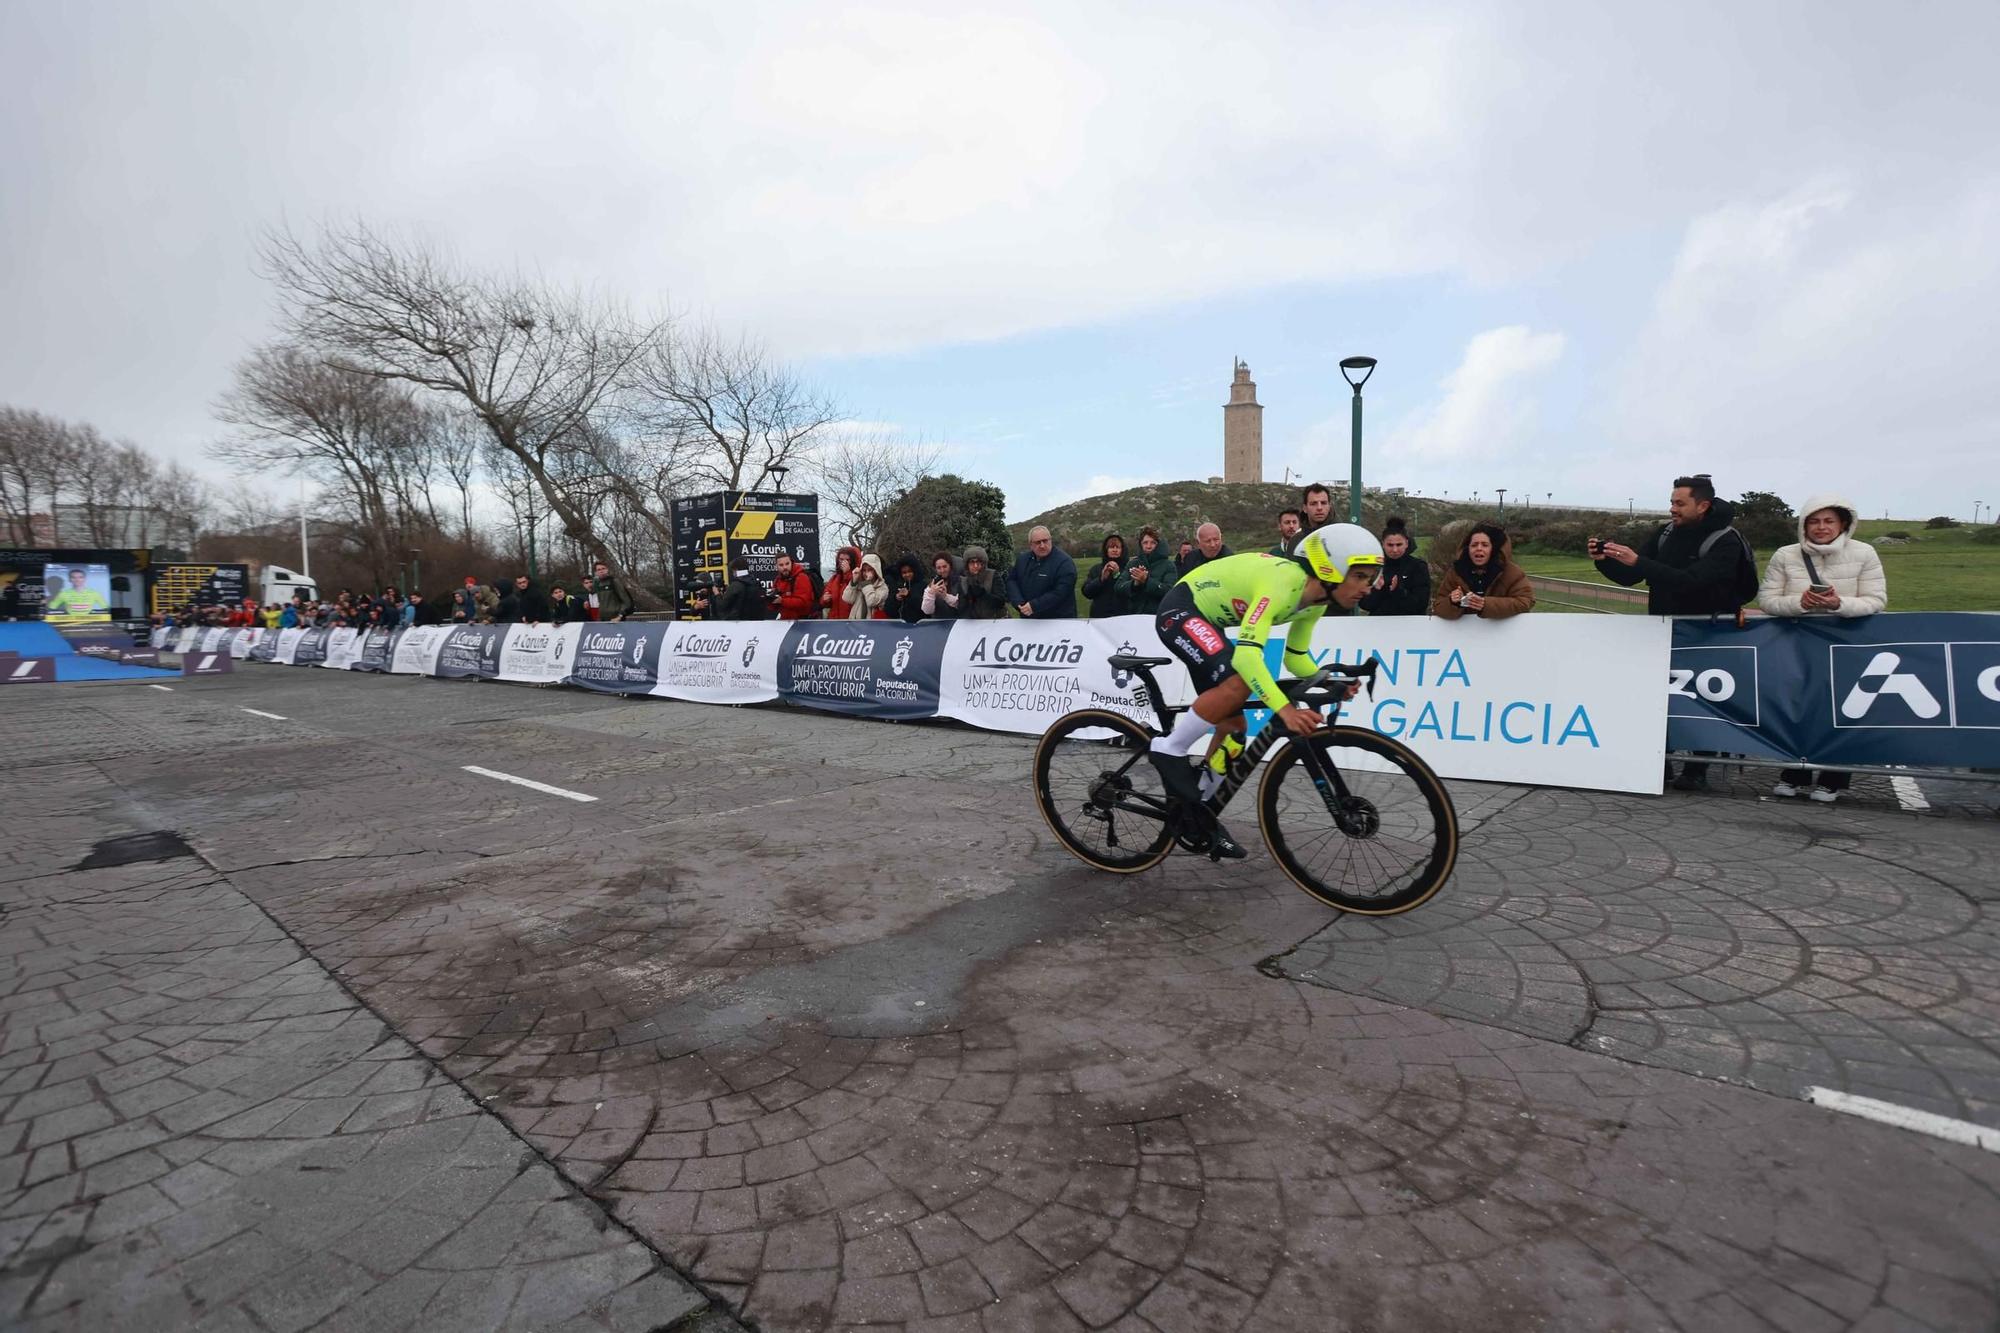 El joven corredor Joshua Tarling se impone en la contrarreloj inaugural de O Gran Camiño en A Coruña